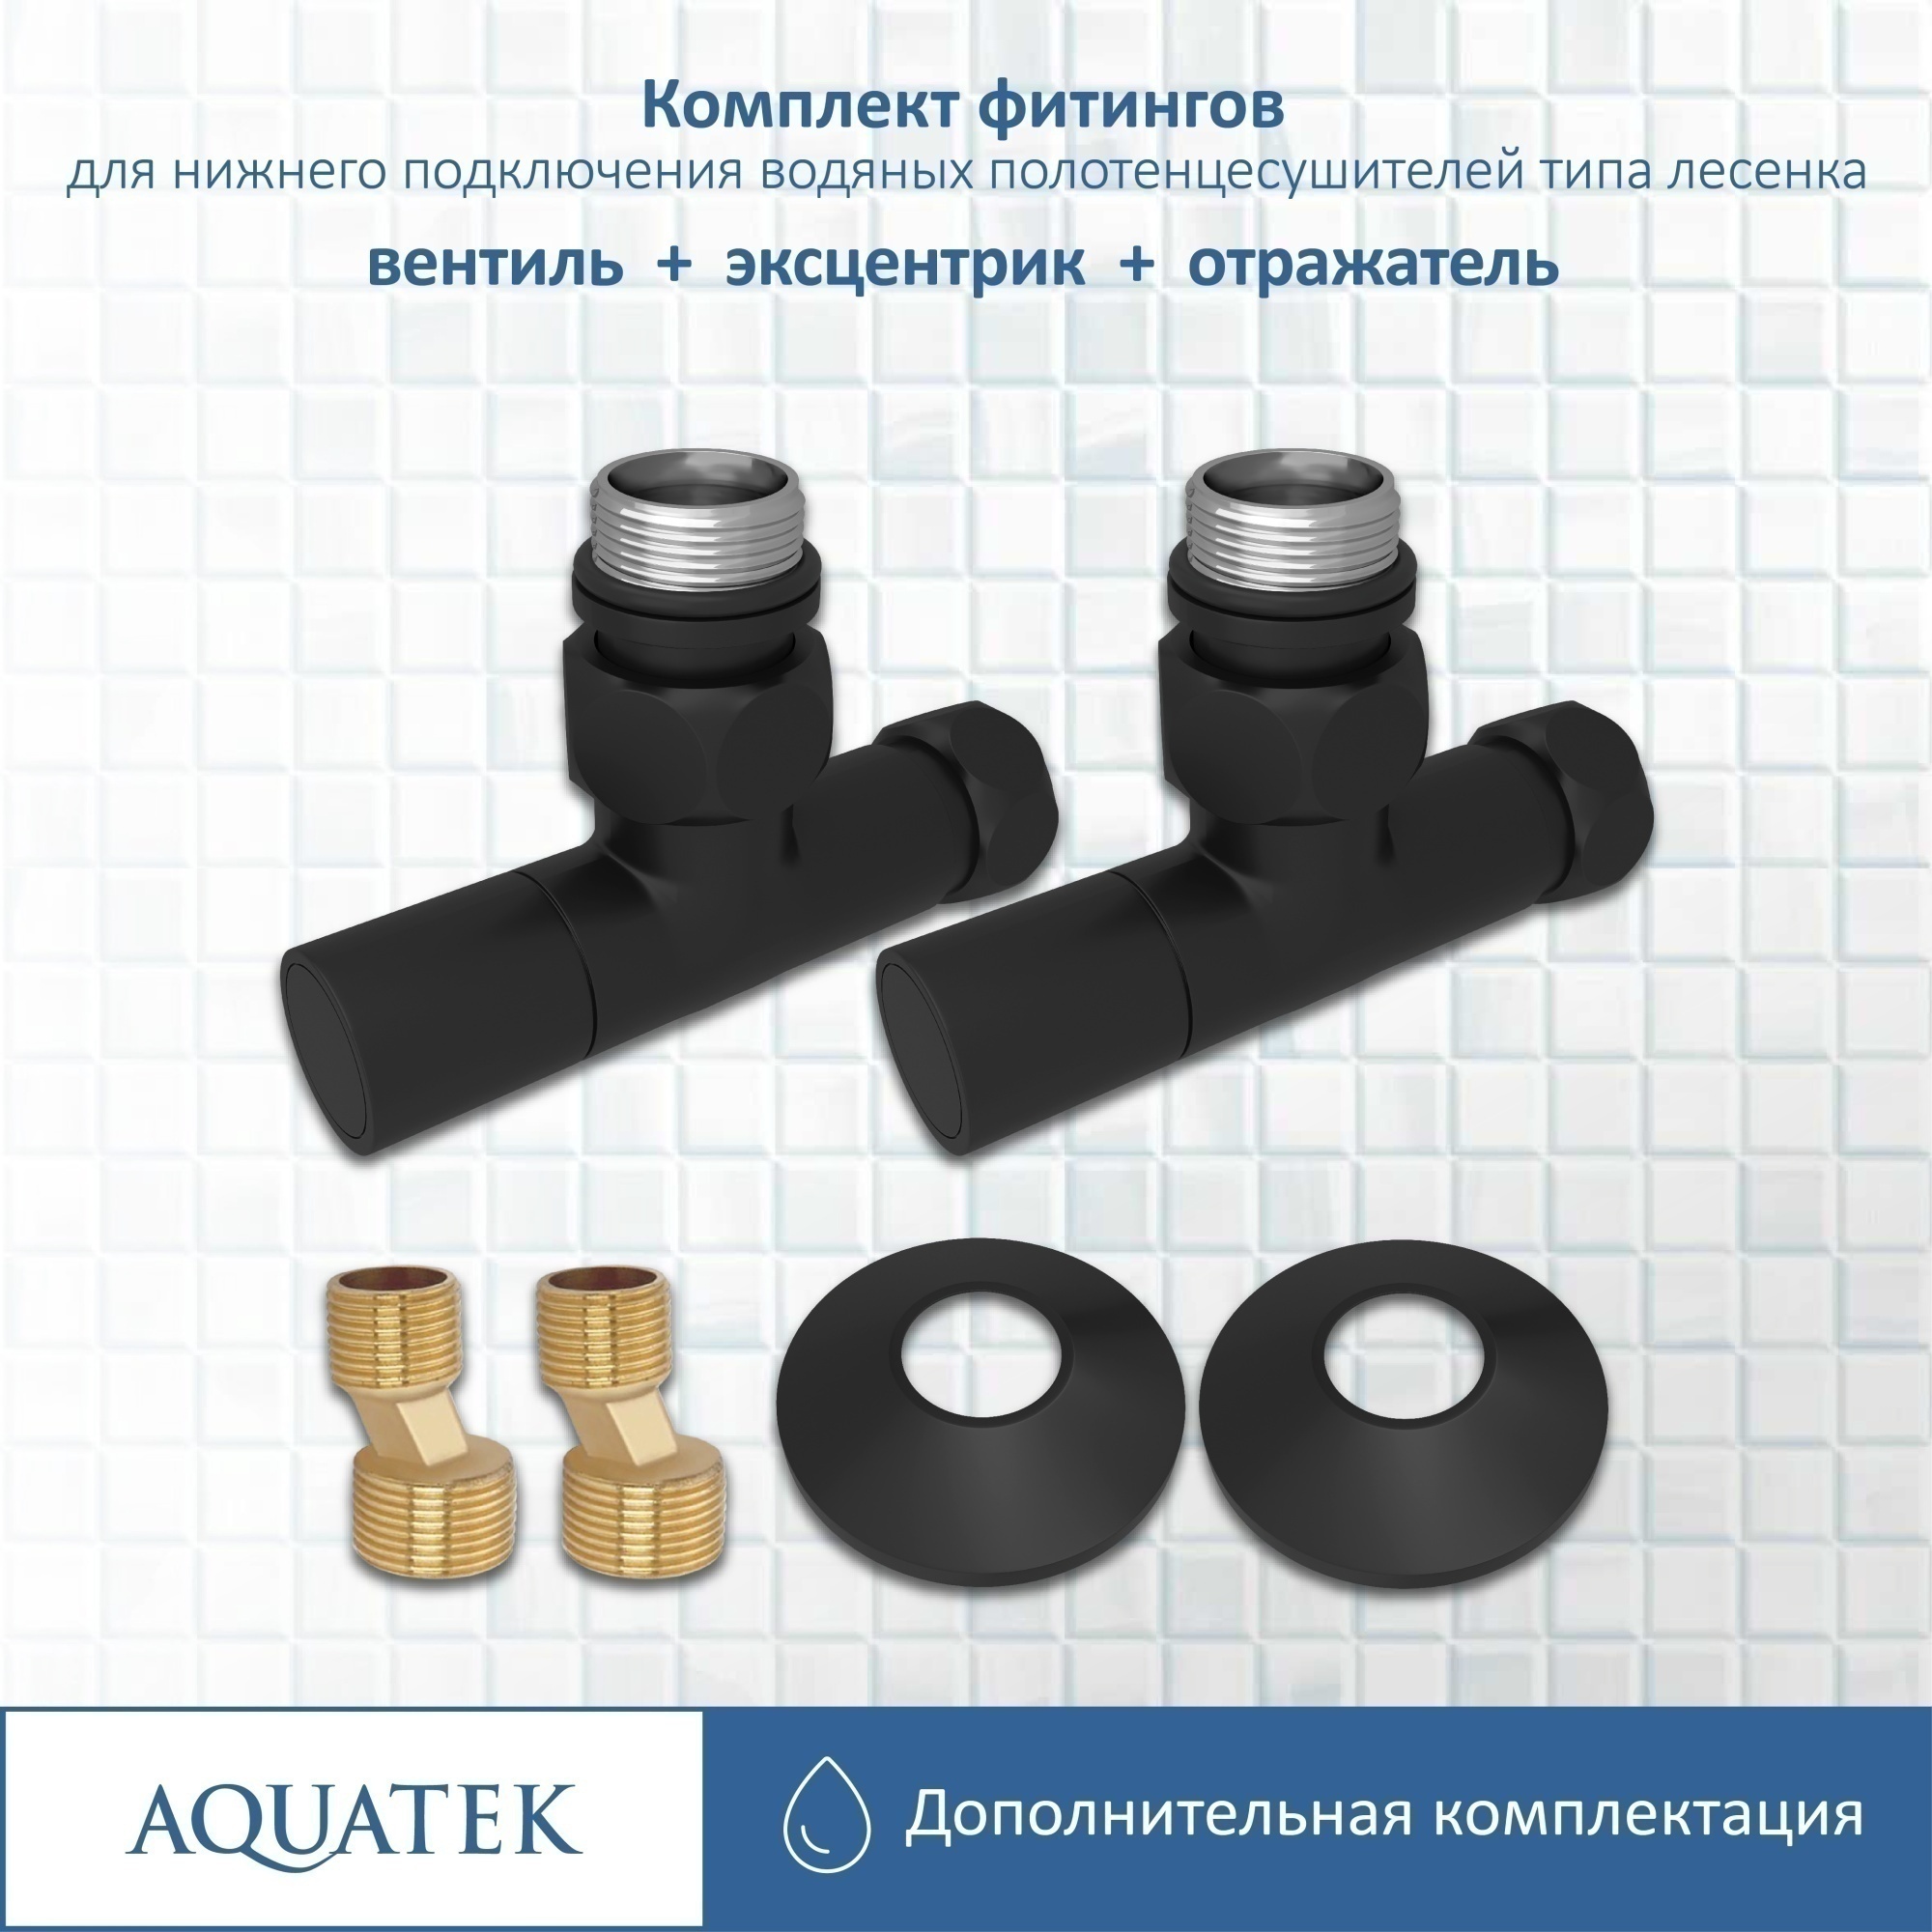 Комплект фитингов для нижнего подключения водяных полотенцесушителей Aquatek AQ 1020BL